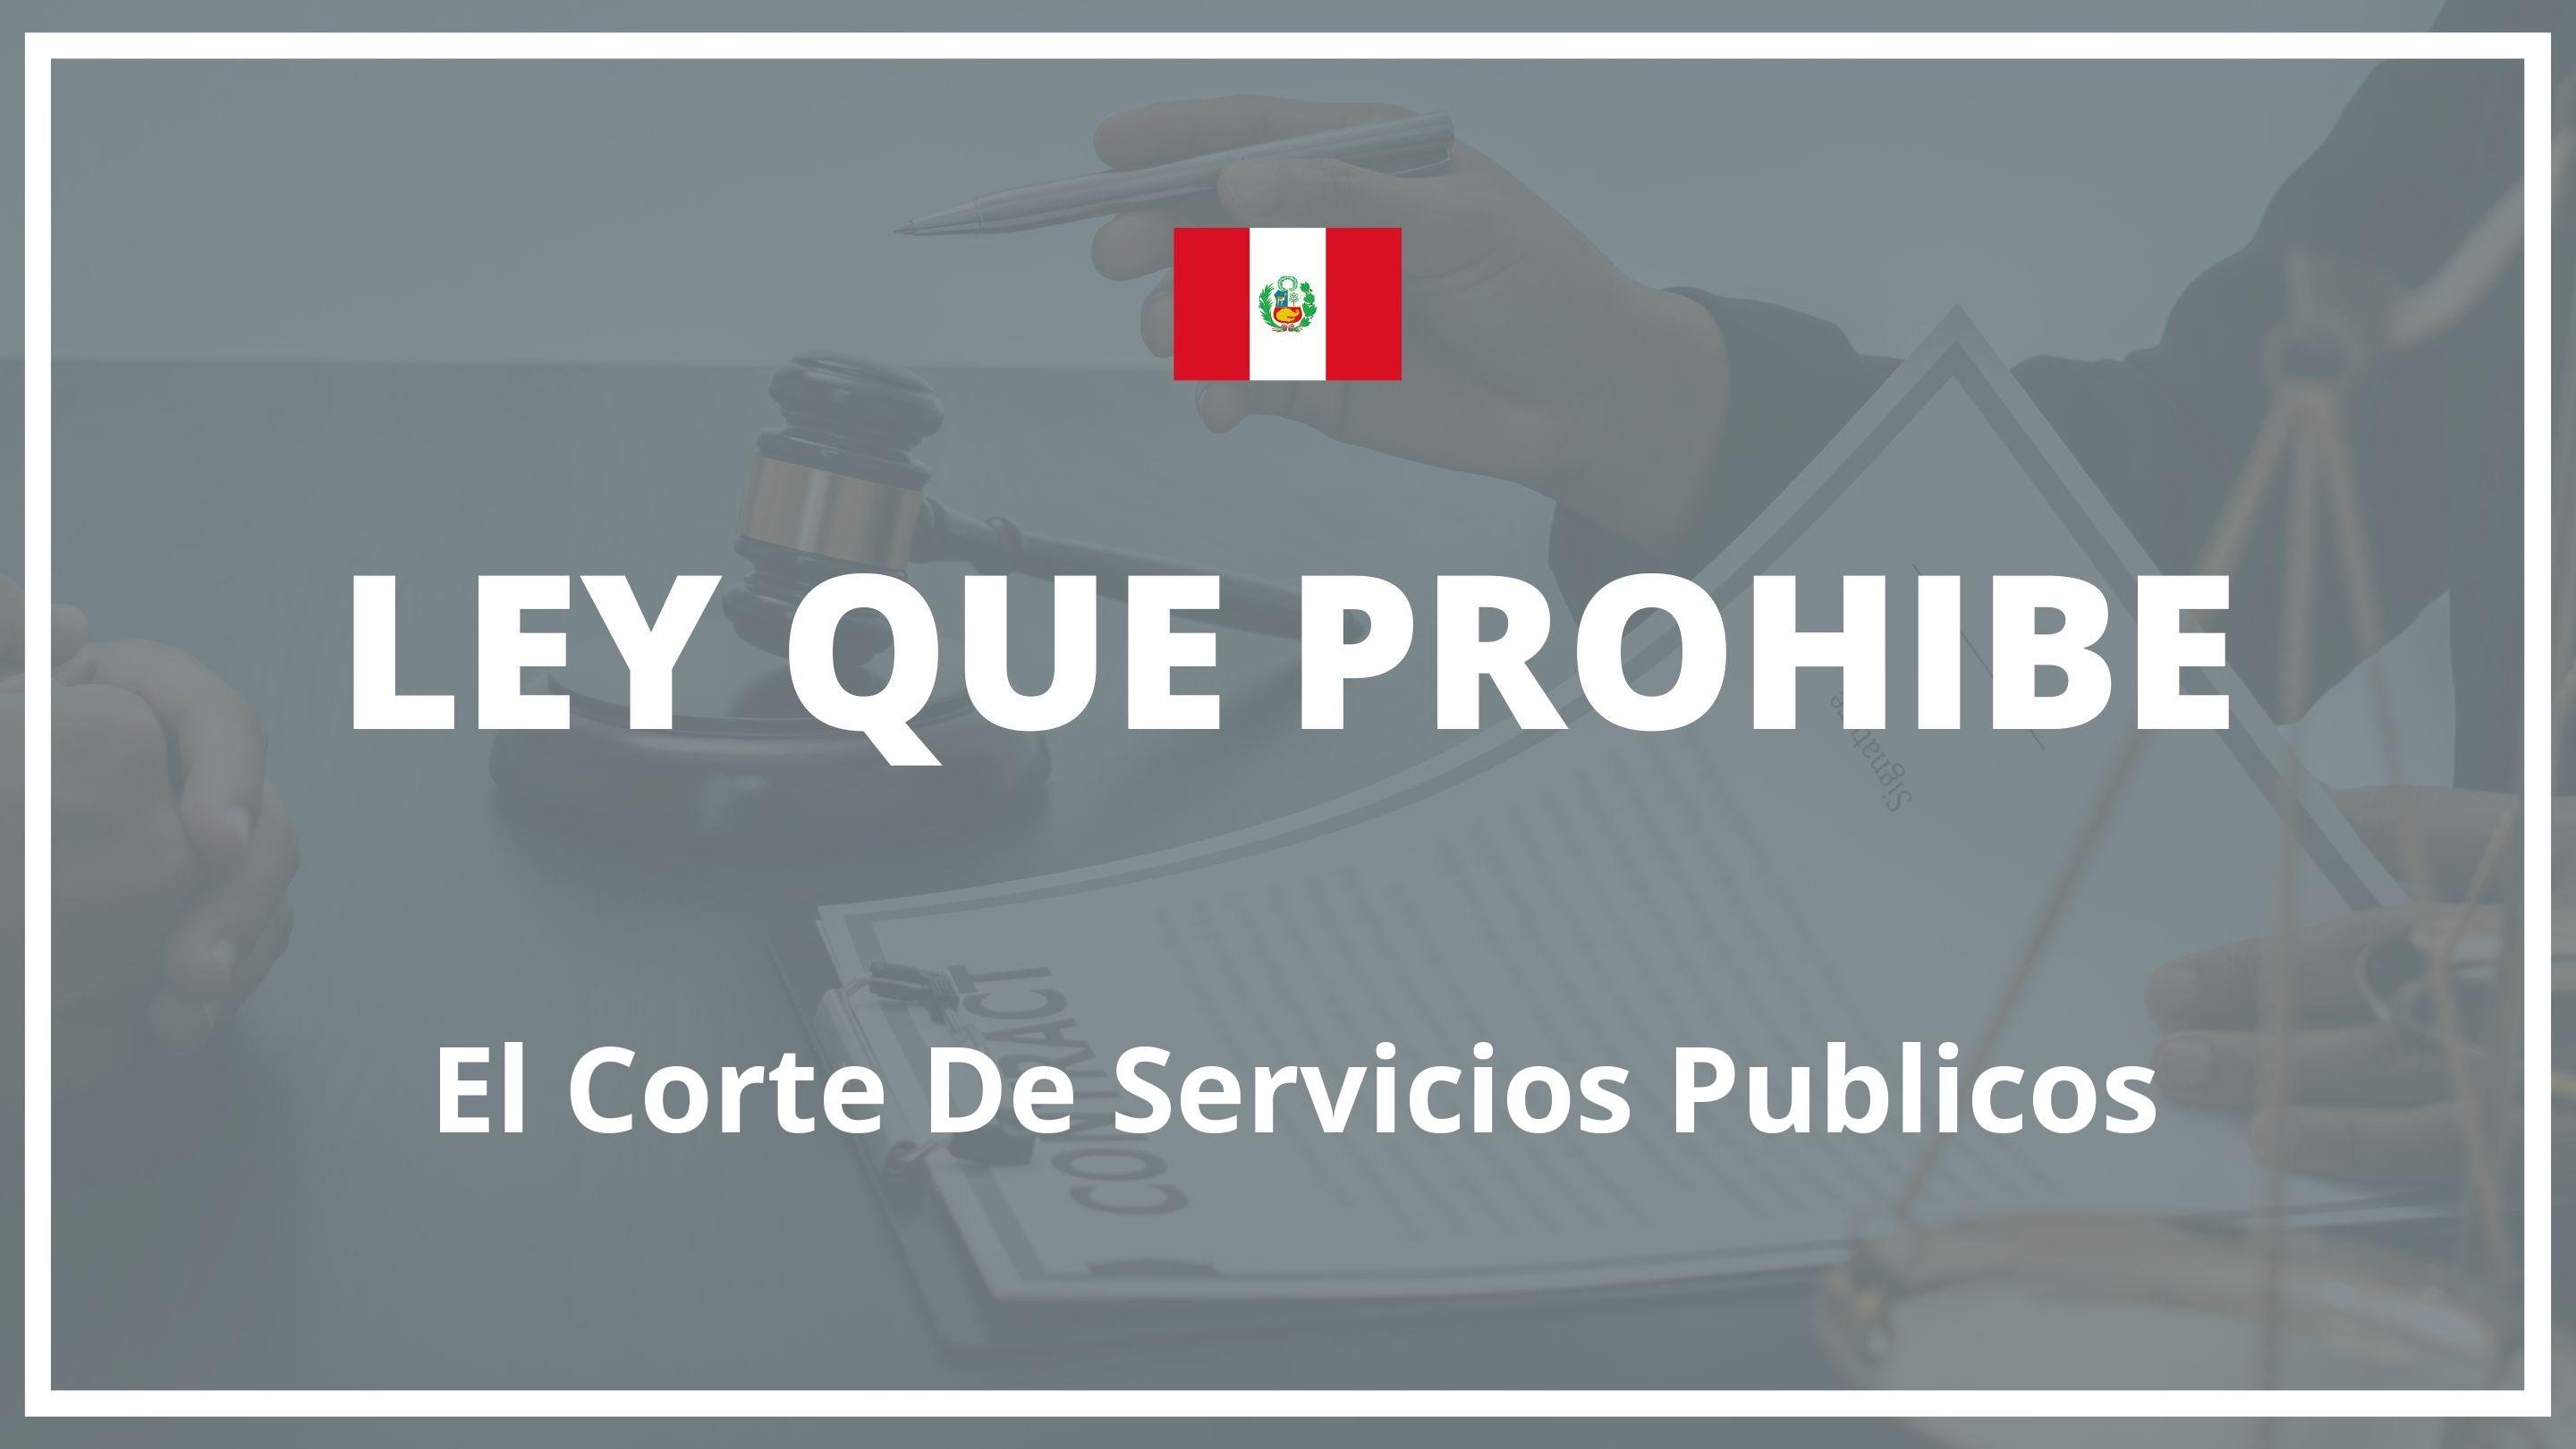 Ley que prohibe el corte de servicios publicos Peru